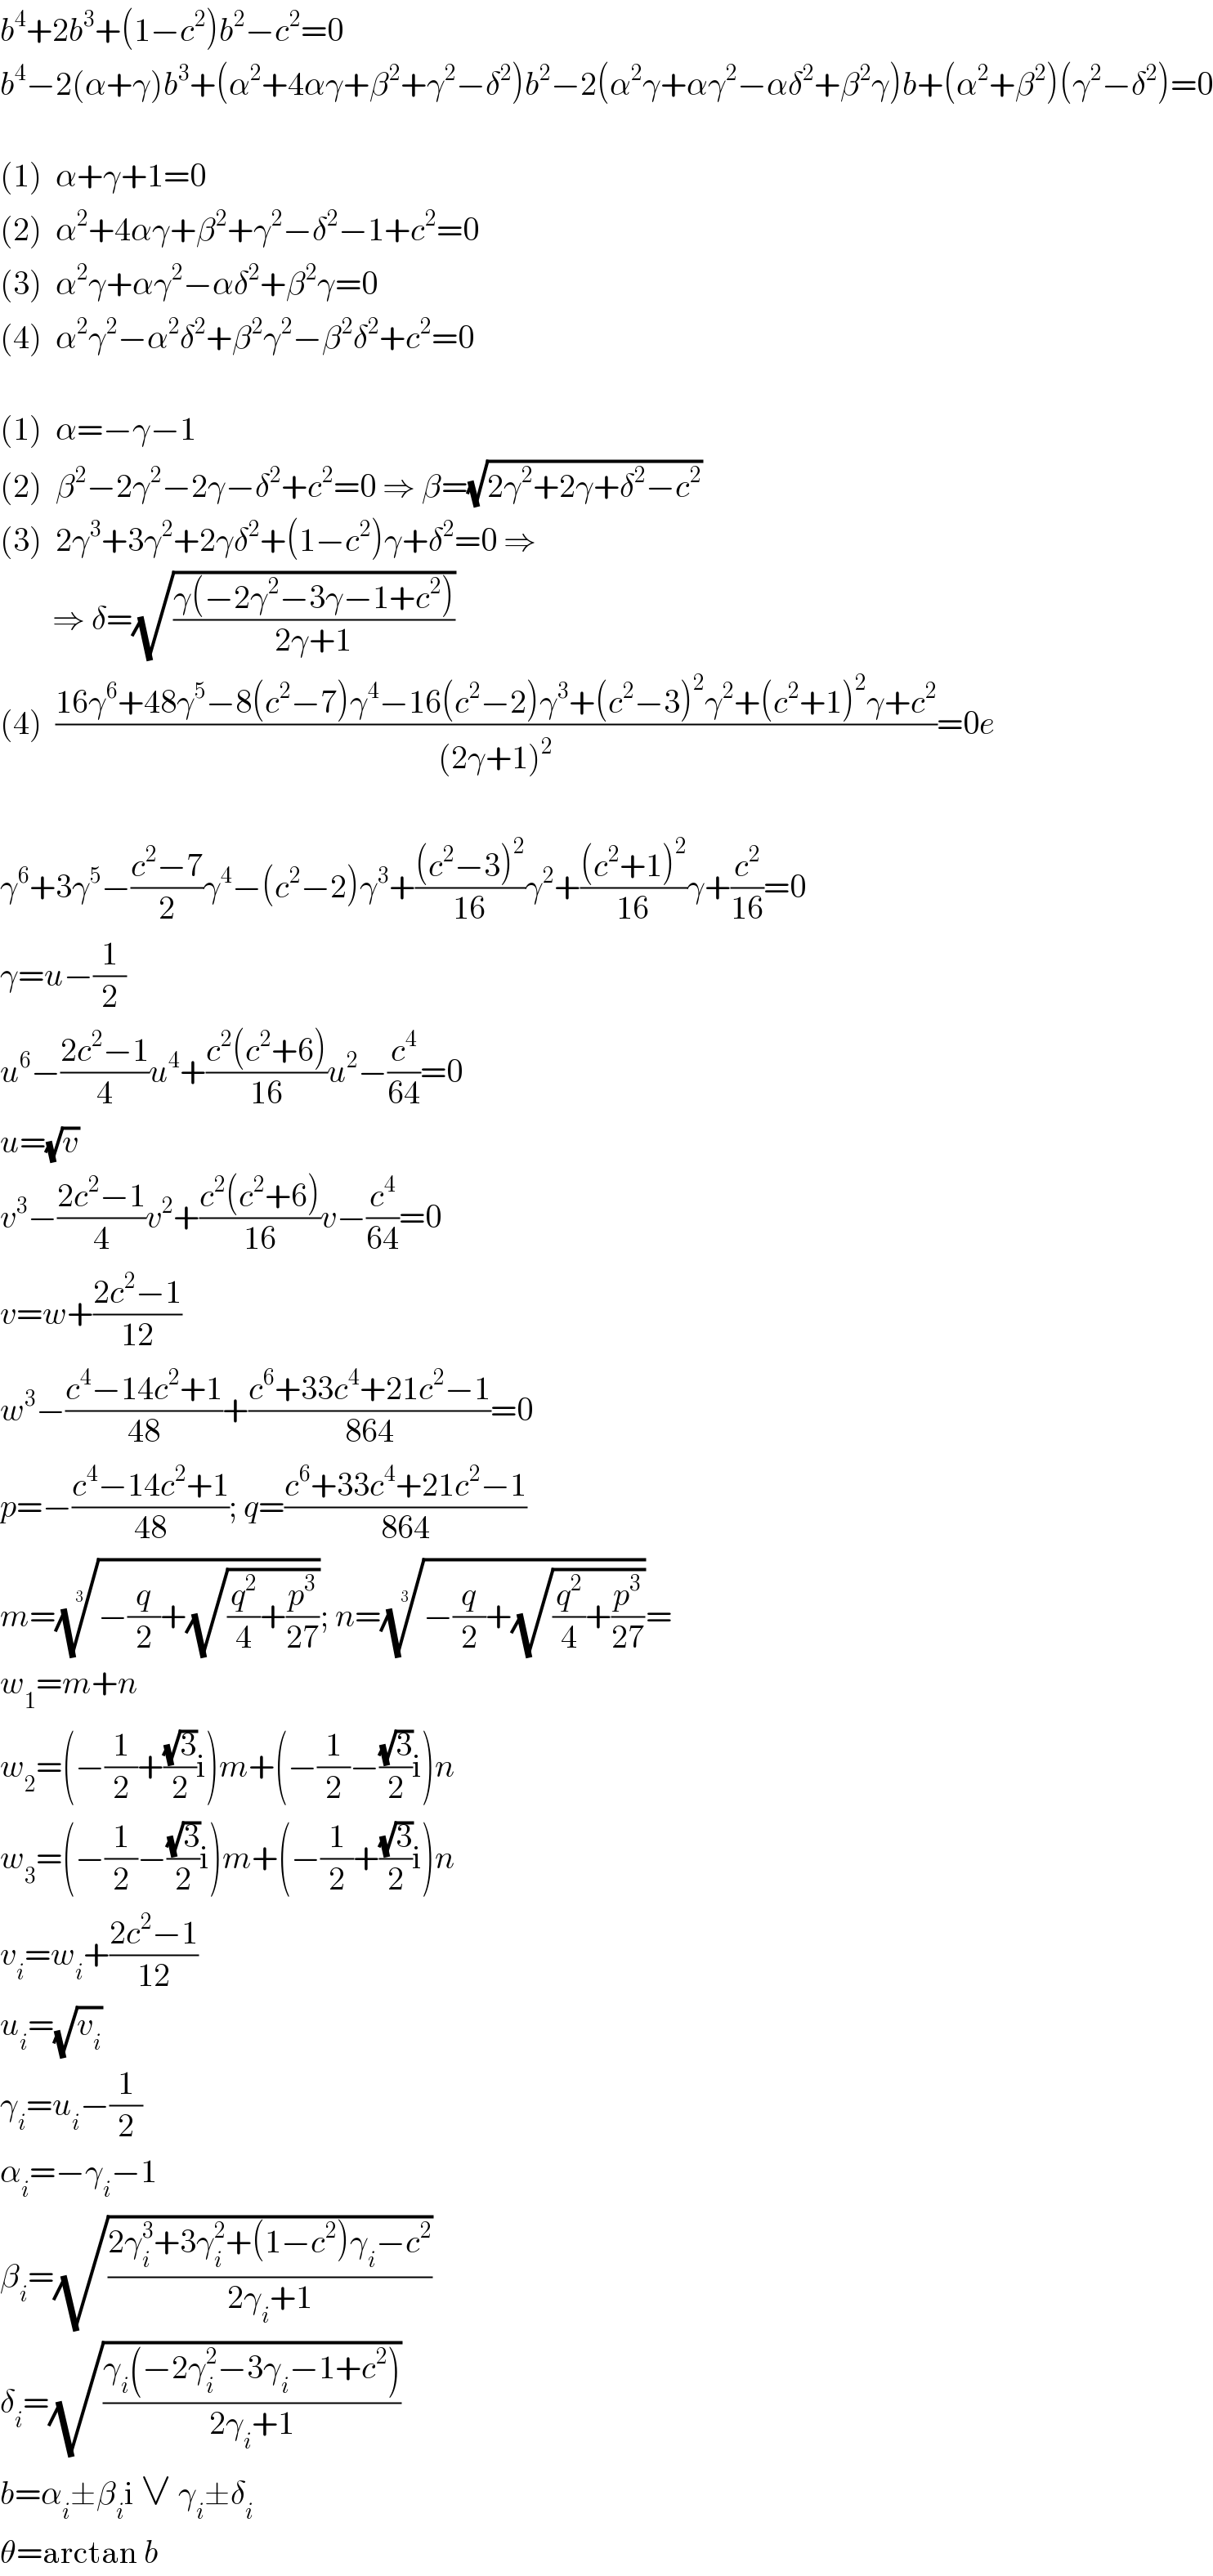 b^4 +2b^3 +(1−c^2 )b^2 −c^2 =0  b^4 −2(α+γ)b^3 +(α^2 +4αγ+β^2 +γ^2 −δ^2 )b^2 −2(α^2 γ+αγ^2 −αδ^2 +β^2 γ)b+(α^2 +β^2 )(γ^2 −δ^2 )=0    (1)  α+γ+1=0  (2)  α^2 +4αγ+β^2 +γ^2 −δ^2 −1+c^2 =0  (3)  α^2 γ+αγ^2 −αδ^2 +β^2 γ=0  (4)  α^2 γ^2 −α^2 δ^2 +β^2 γ^2 −β^2 δ^2 +c^2 =0    (1)  α=−γ−1  (2)  β^2 −2γ^2 −2γ−δ^2 +c^2 =0 ⇒ β=(√(2γ^2 +2γ+δ^2 −c^2 ))  (3)  2γ^3 +3γ^2 +2γδ^2 +(1−c^2 )γ+δ^2 =0 ⇒          ⇒ δ=(√((γ(−2γ^2 −3γ−1+c^2 ))/(2γ+1)))  (4)  ((16γ^6 +48γ^5 −8(c^2 −7)γ^4 −16(c^2 −2)γ^3 +(c^2 −3)^2 γ^2 +(c^2 +1)^2 γ+c^2 )/((2γ+1)^2 ))=0e    γ^6 +3γ^5 −((c^2 −7)/2)γ^4 −(c^2 −2)γ^3 +(((c^2 −3)^2 )/(16))γ^2 +(((c^2 +1)^2 )/(16))γ+(c^2 /(16))=0  γ=u−(1/2)  u^6 −((2c^2 −1)/4)u^4 +((c^2 (c^2 +6))/(16))u^2 −(c^4 /(64))=0  u=(√v)  v^3 −((2c^2 −1)/4)v^2 +((c^2 (c^2 +6))/(16))v−(c^4 /(64))=0  v=w+((2c^2 −1)/(12))  w^3 −((c^4 −14c^2 +1)/(48))+((c^6 +33c^4 +21c^2 −1)/(864))=0  p=−((c^4 −14c^2 +1)/(48)); q=((c^6 +33c^4 +21c^2 −1)/(864))  m=((−(q/2)+(√((q^2 /4)+(p^3 /(27))))))^(1/3) ; n=((−(q/2)+(√((q^2 /4)+(p^3 /(27))))))^(1/3) =  w_1 =m+n  w_2 =(−(1/2)+((√3)/2)i)m+(−(1/2)−((√3)/2)i)n  w_3 =(−(1/2)−((√3)/2)i)m+(−(1/2)+((√3)/2)i)n  v_i =w_i +((2c^2 −1)/(12))  u_i =(√v_i )  γ_i =u_i −(1/2)  α_i =−γ_i −1  β_i =(√((2γ_i ^3 +3γ_i ^2 +(1−c^2 )γ_i −c^2 )/(2γ_i +1)))  δ_i =(√((γ_i (−2γ_i ^2 −3γ_i −1+c^2 ))/(2γ_i +1)))  b=α_i ±β_i i ∨ γ_i ±δ_i   θ=arctan b  